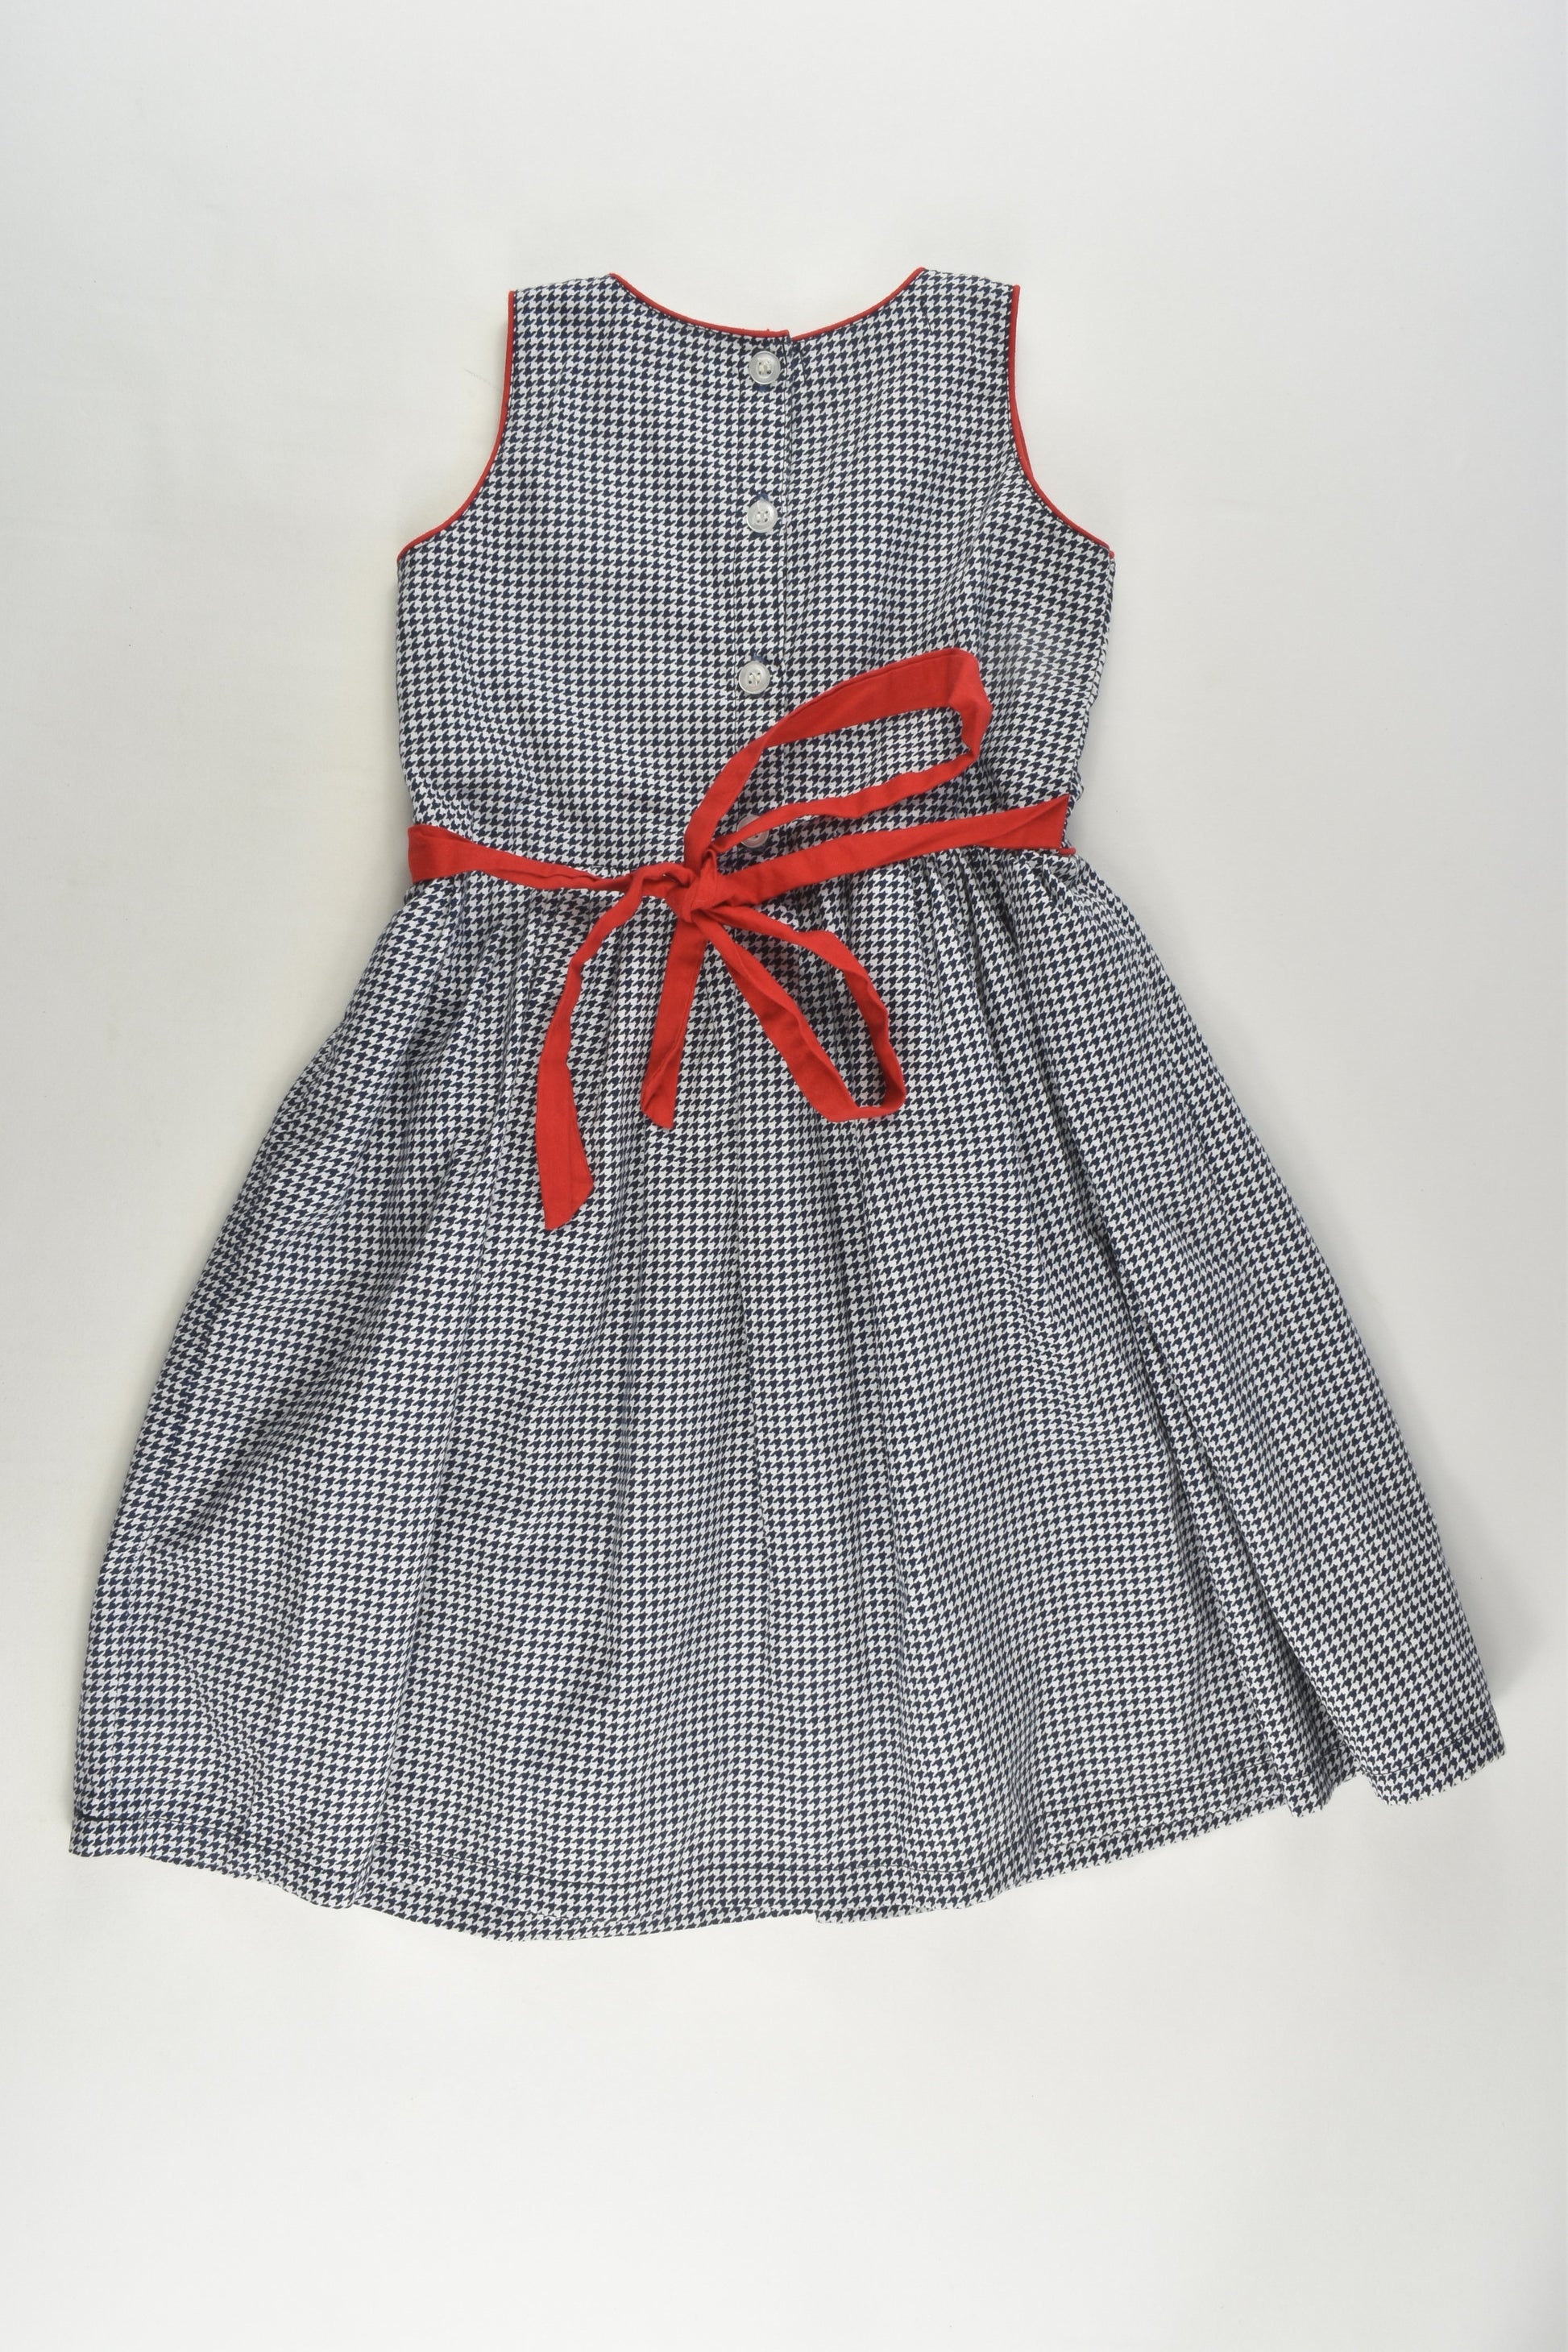 Kidscapade Size 4 Lined Dress